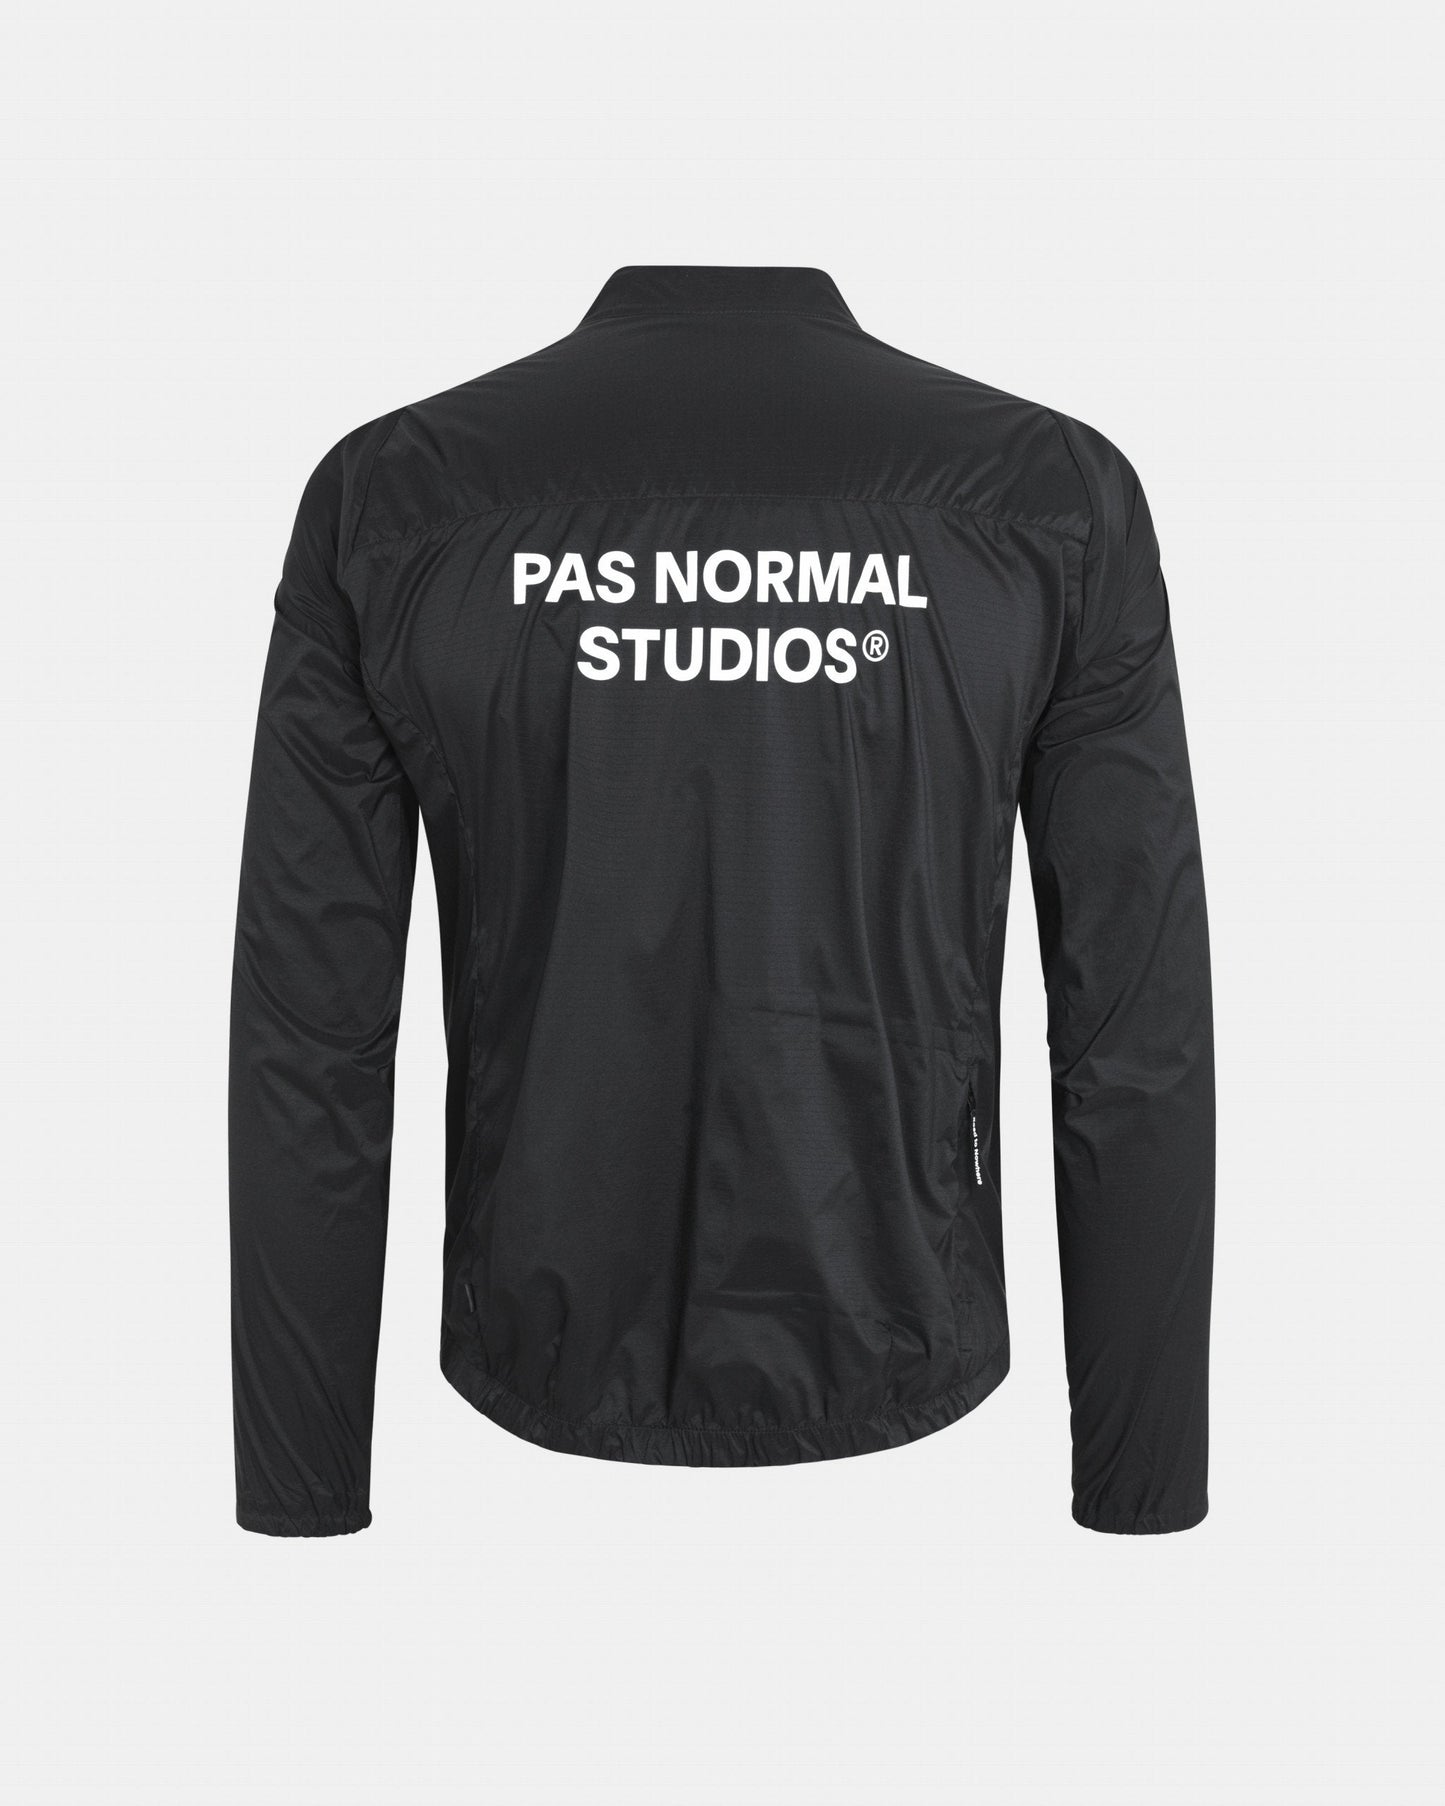 Pas Normal Studios - Manteau Essential Insulated Homme Manteaux Pas Normal Studios 